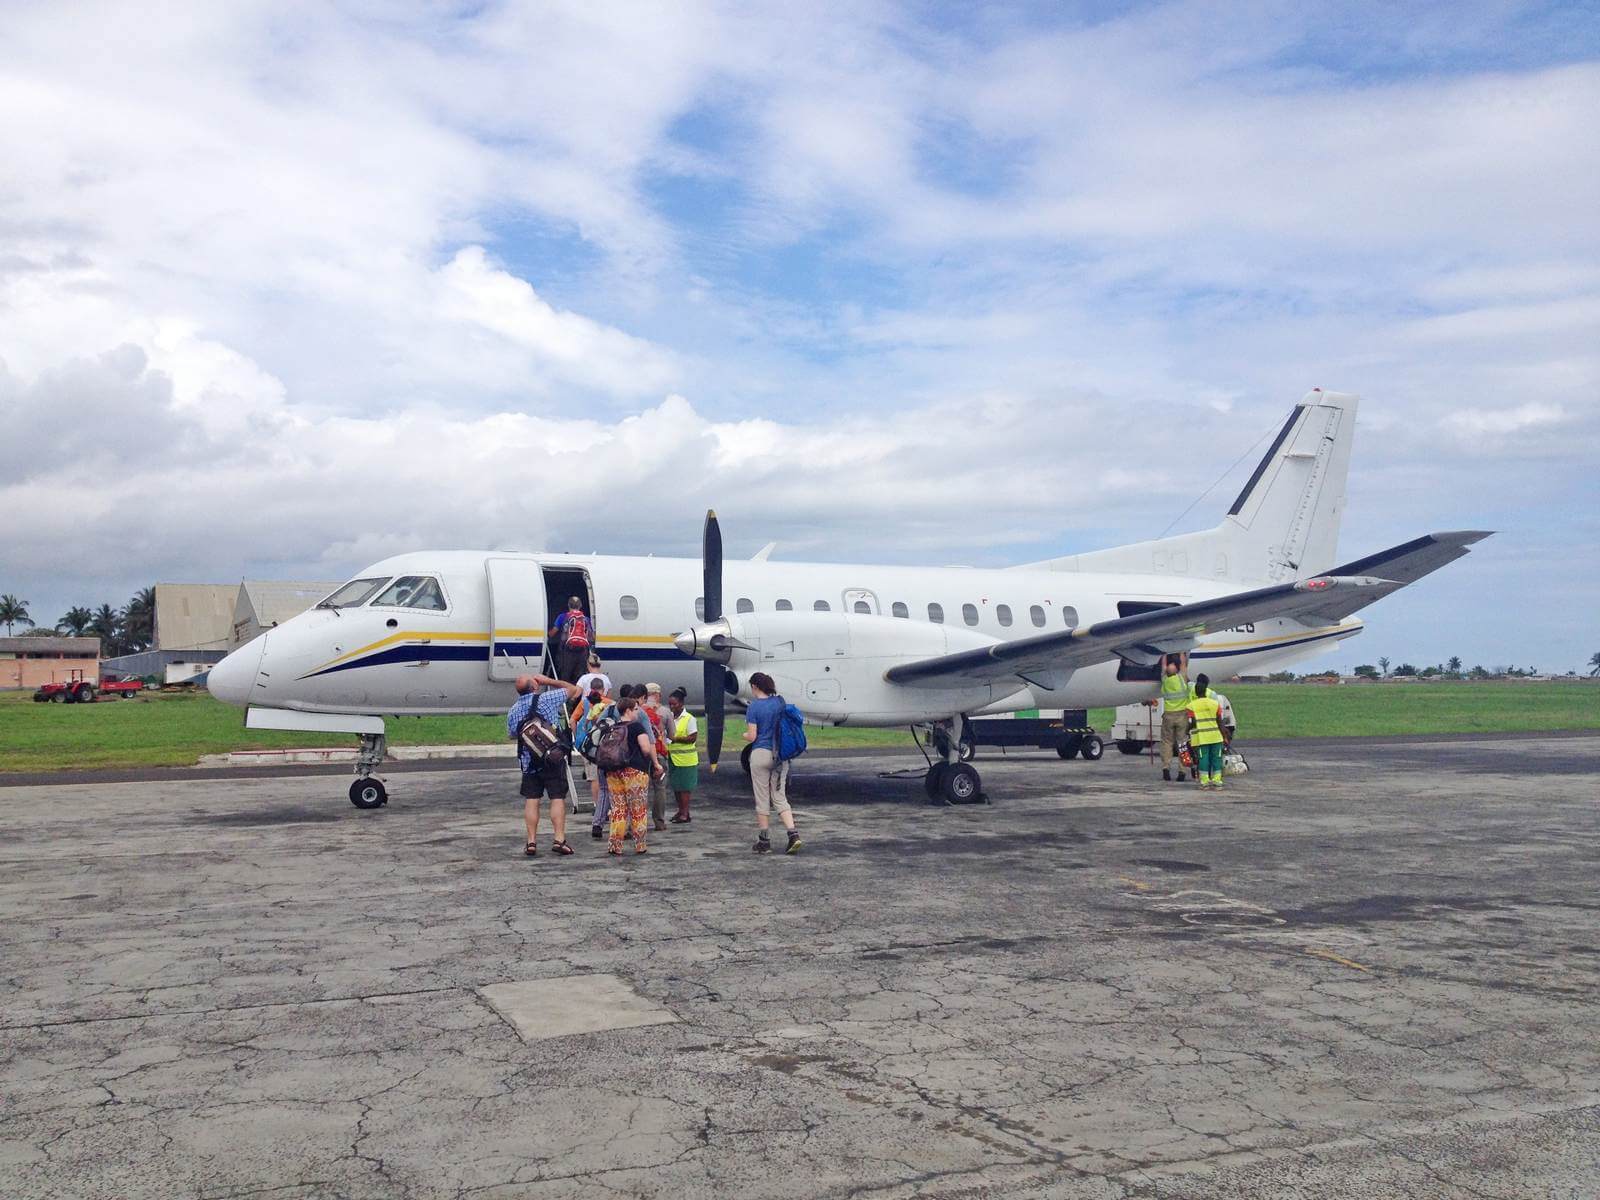 Foto: Inlandsflug von Sao Tome nach Principe - Bildrechte Pixxio Robert STP-171029 - Lupe Reisen